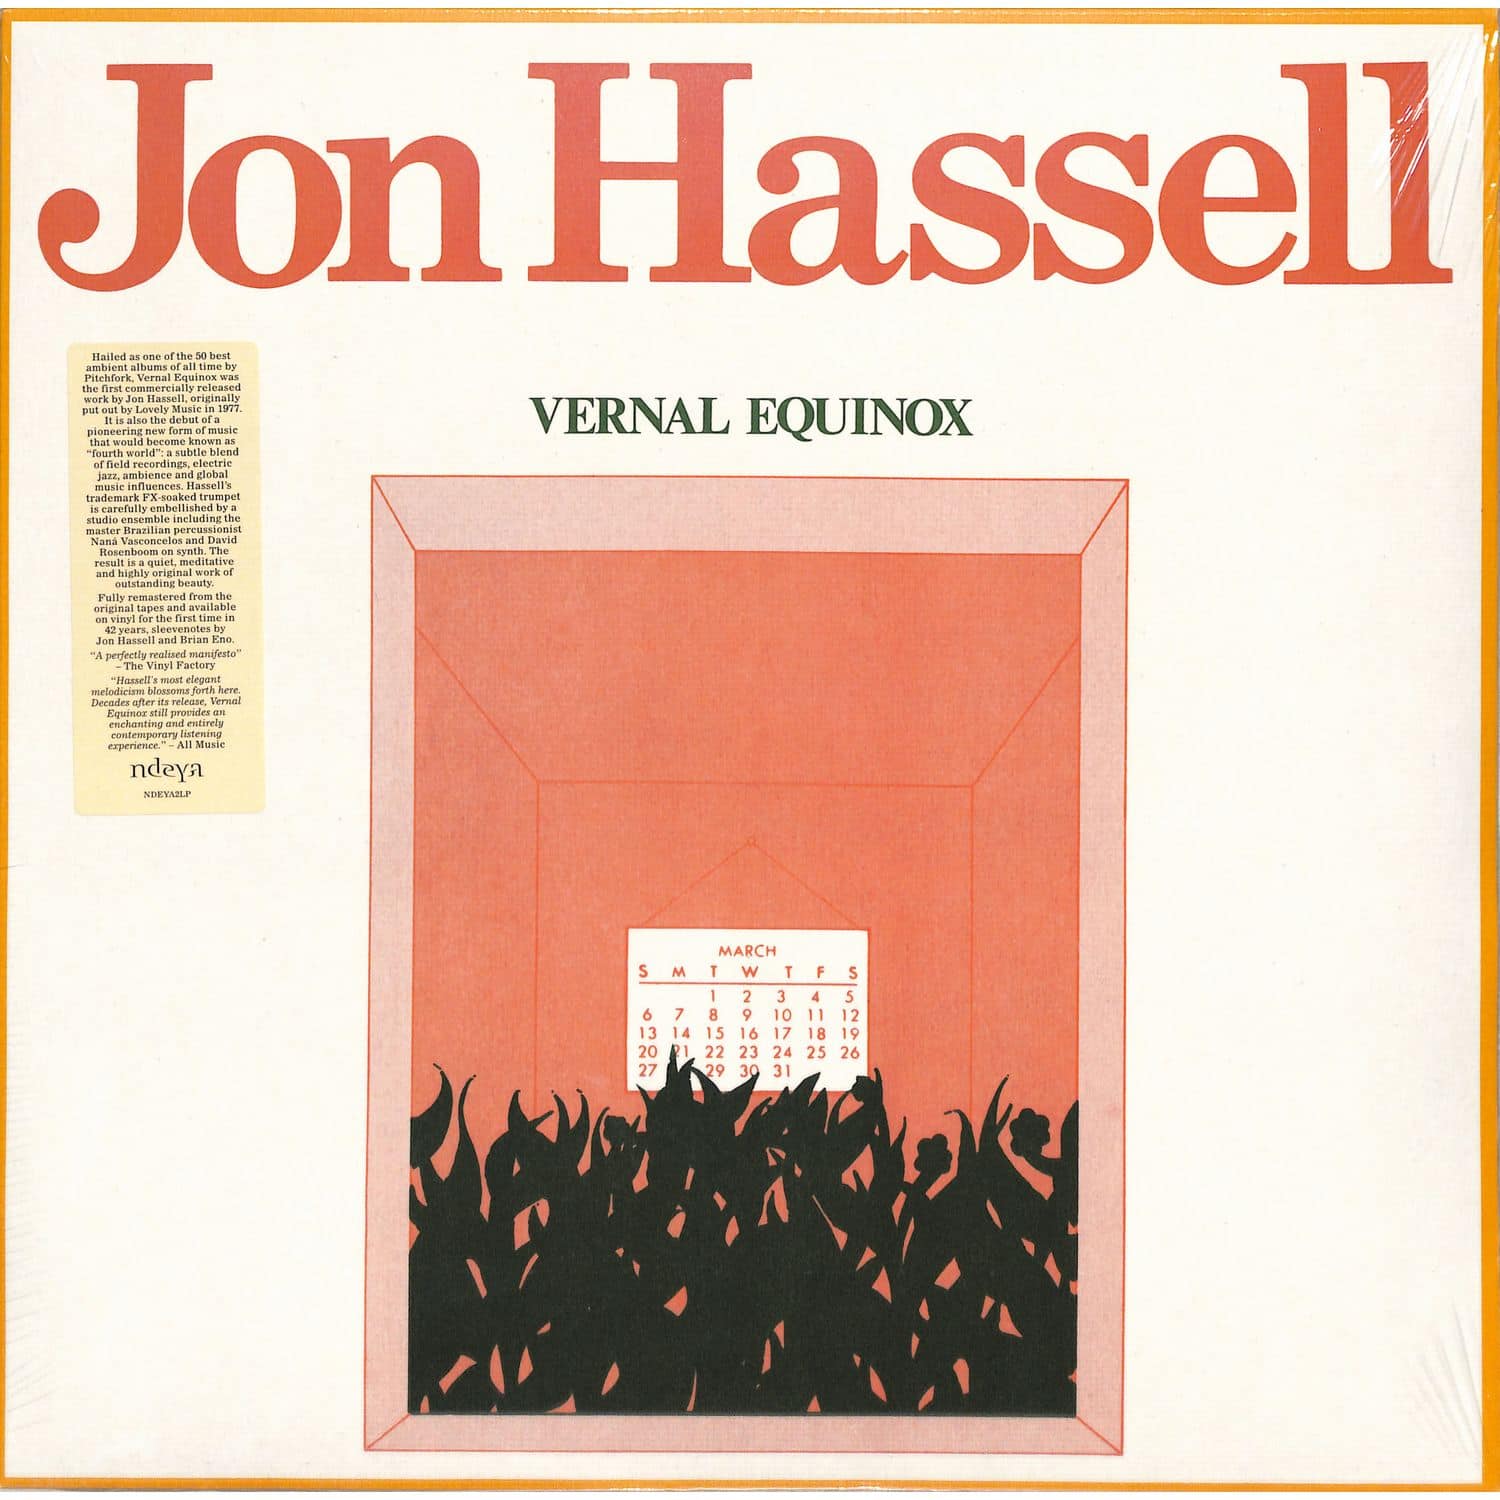 Jon Hassell - VERNAL EQUINOX 